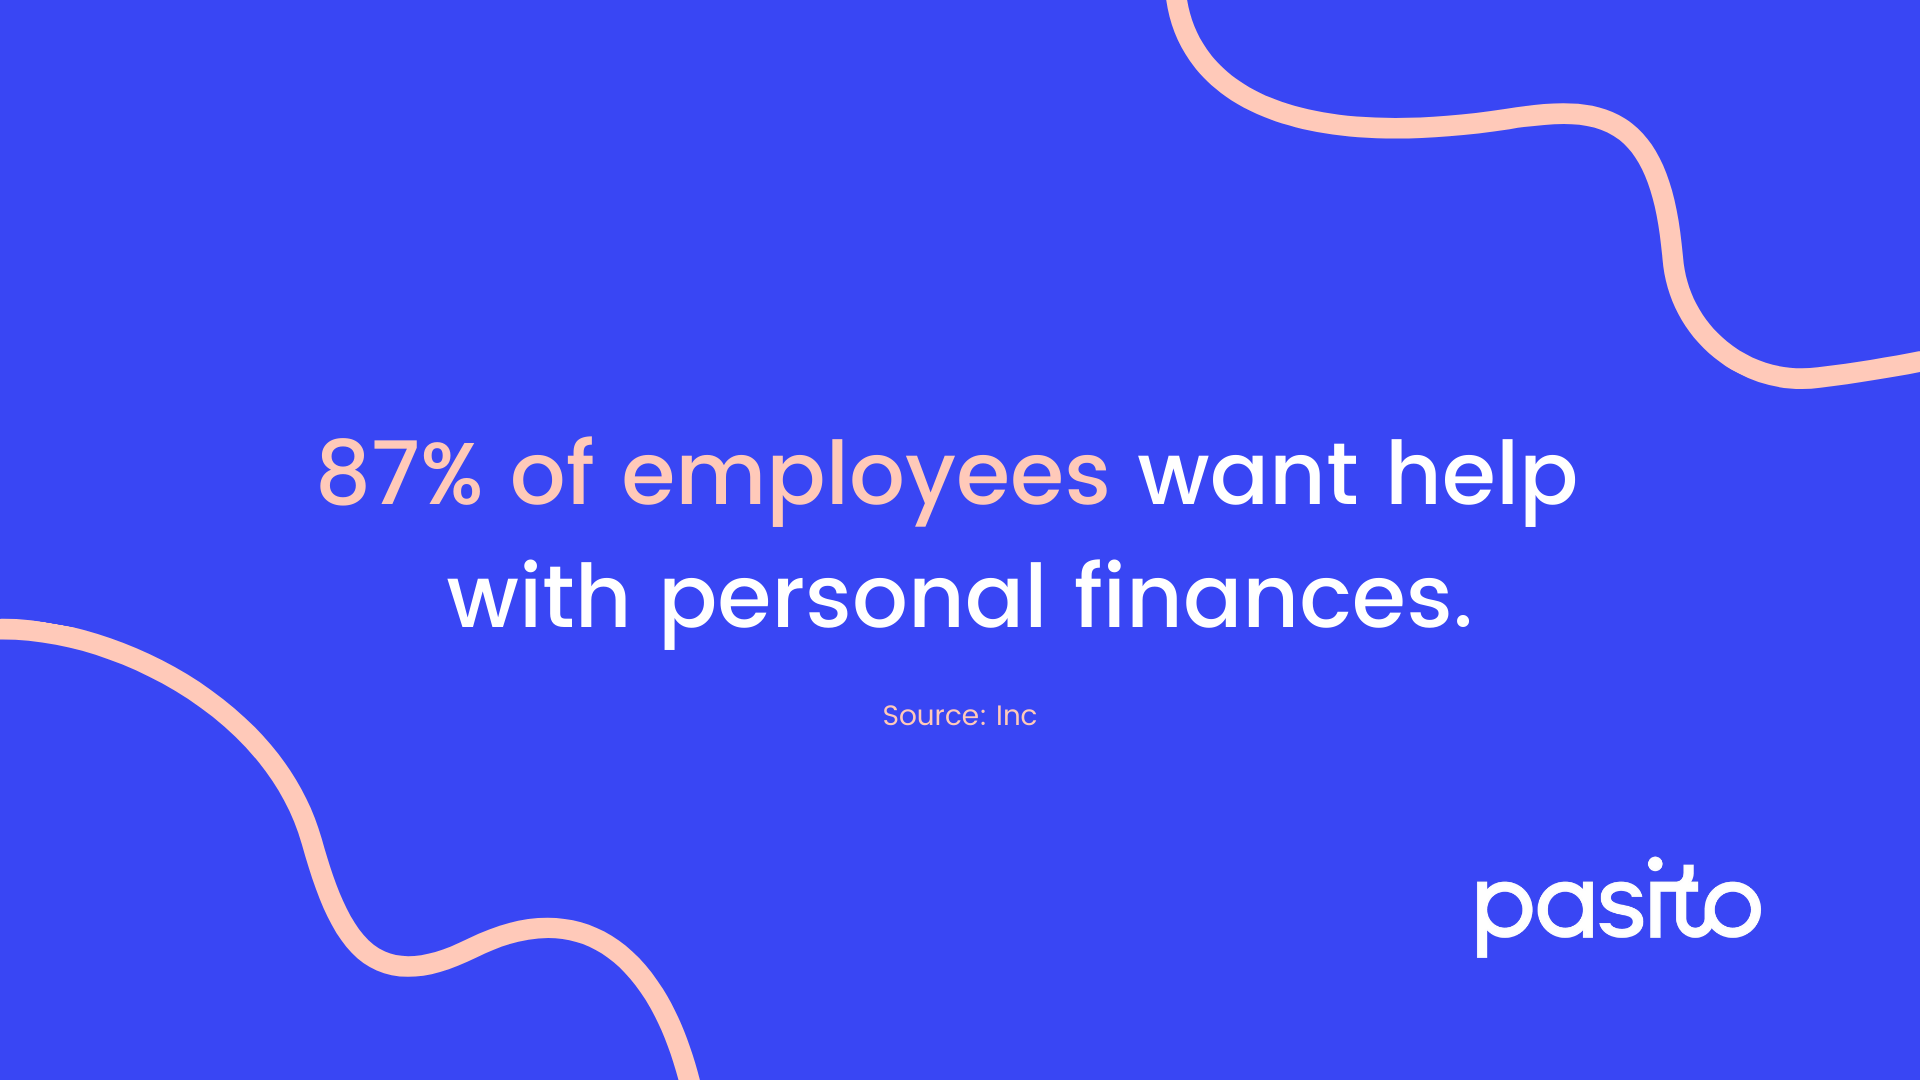 employee financial wellness